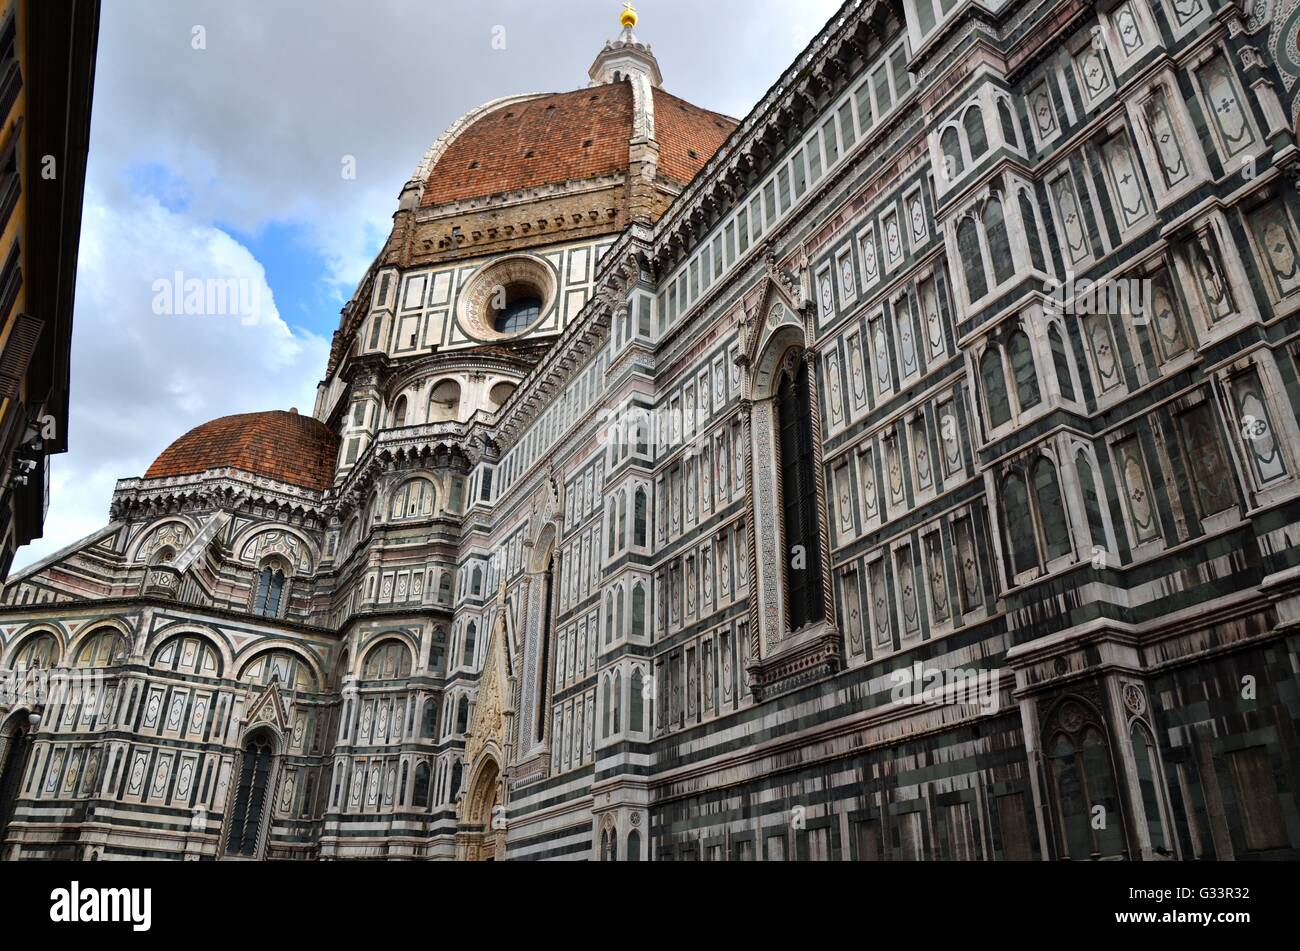 Cattedrale di Santa Maria del Fiore, Florence Cathedral, Duomo di Firenze Stock Photo